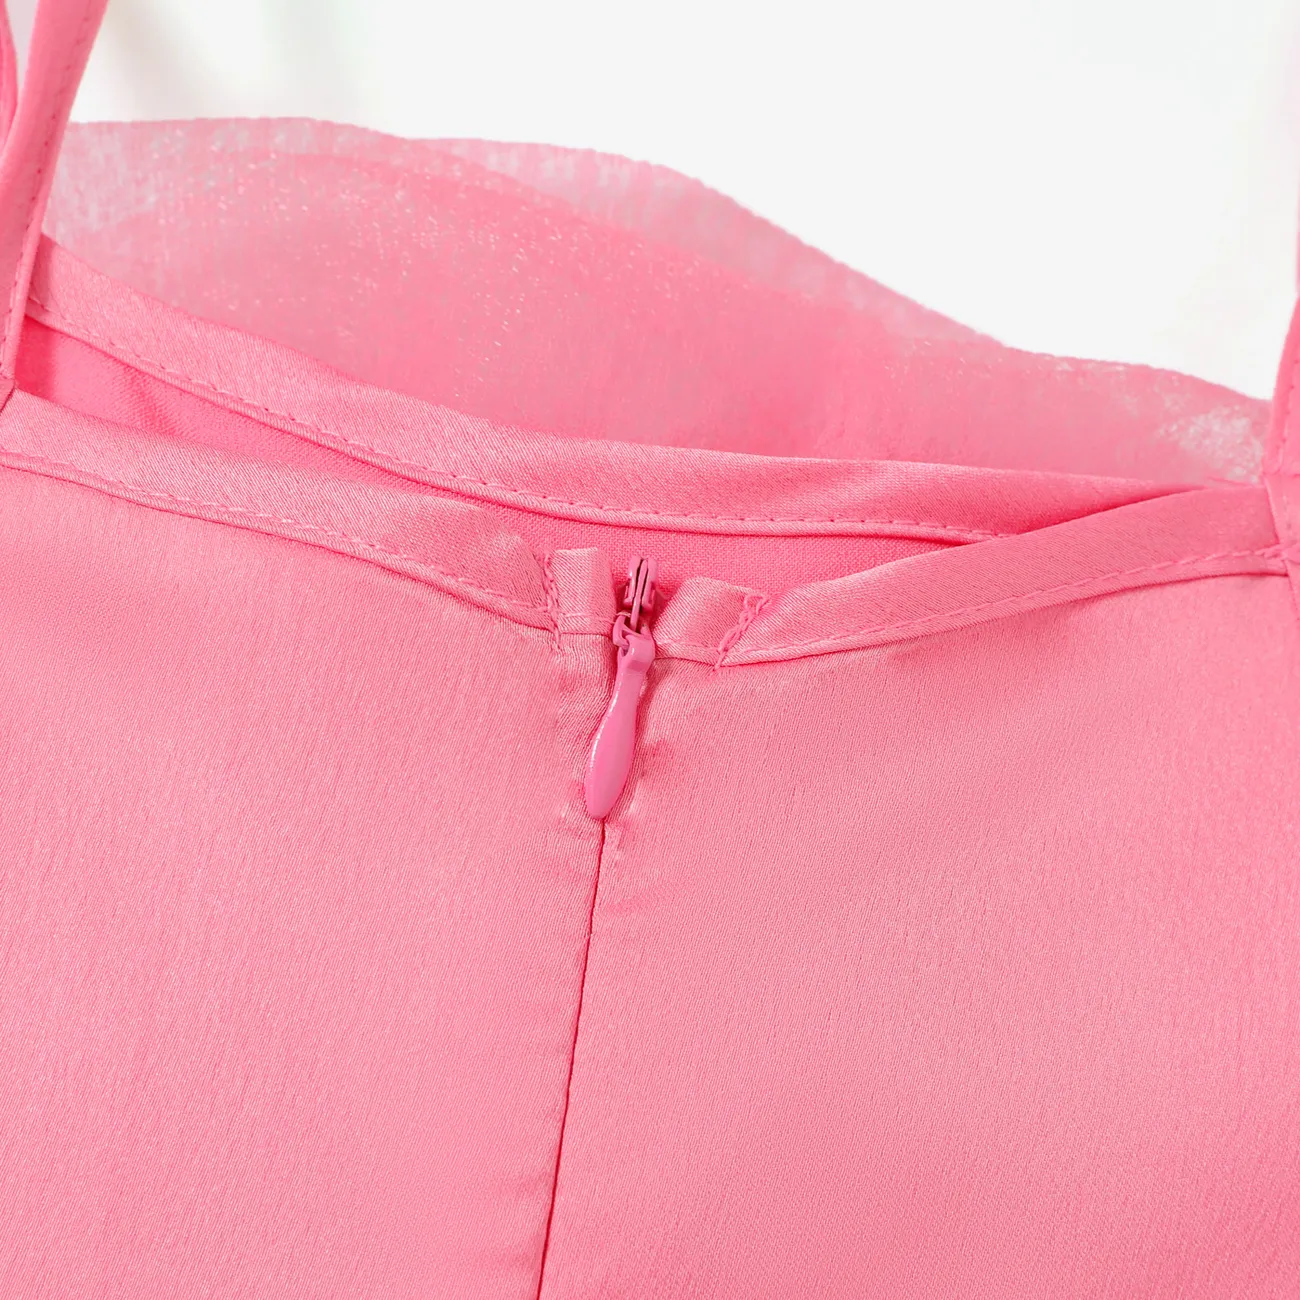 小童 女 立體造型 甜美 連衣裙 粉色 big image 1